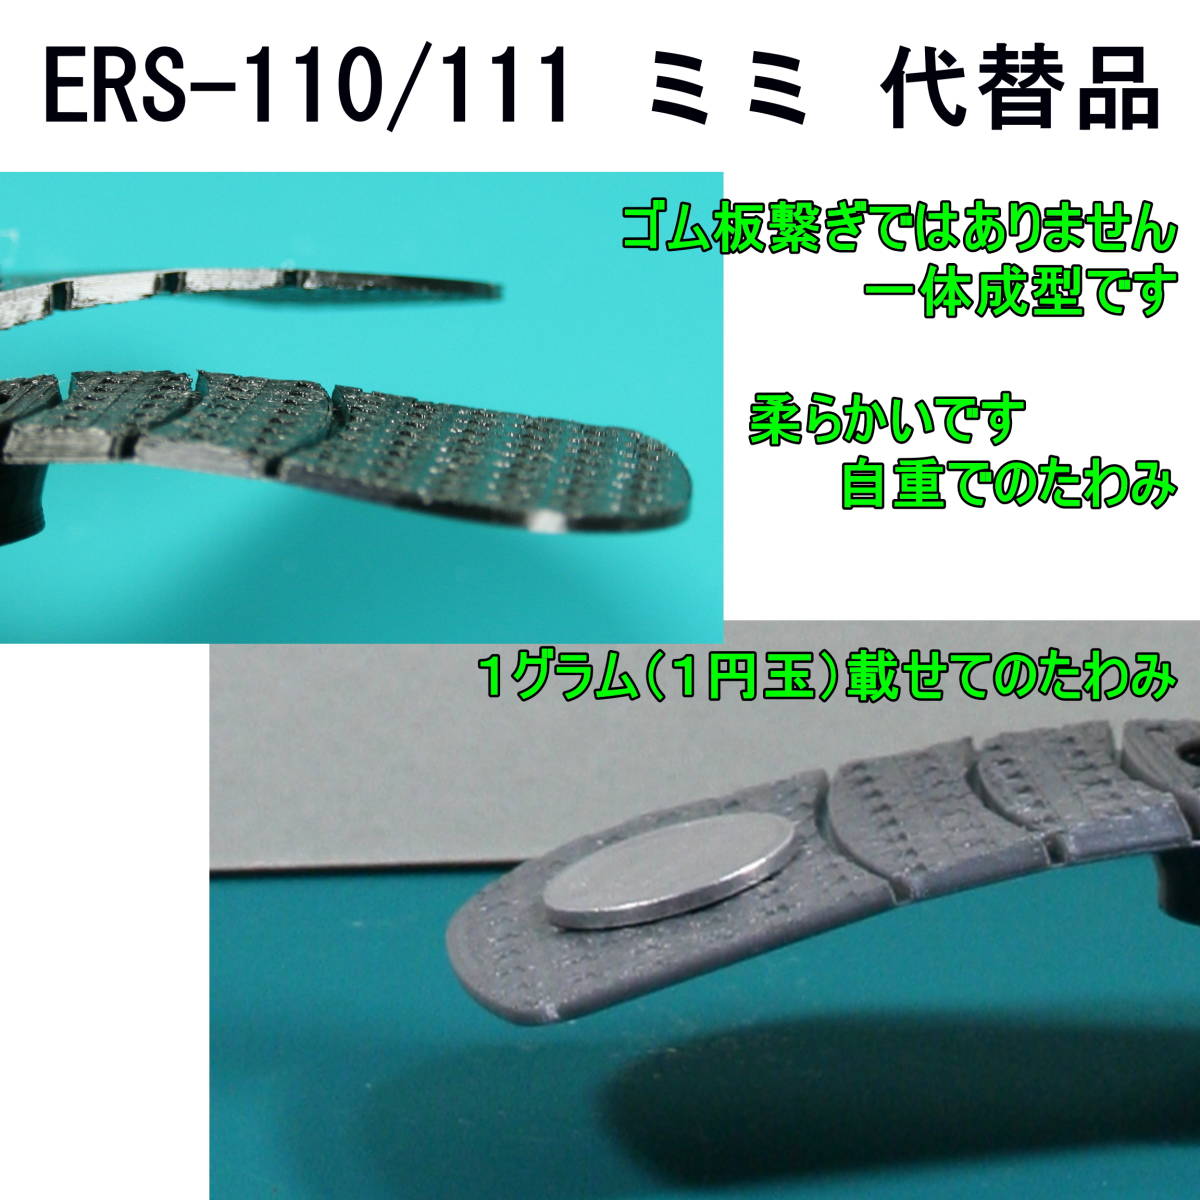 AIBO[ERS-110/111 для альтернативный детали ] ушко (уголок) ( серебряный )* вид функция важность / глянец поверхность вмятина выпуклость есть /. качество материал TPU